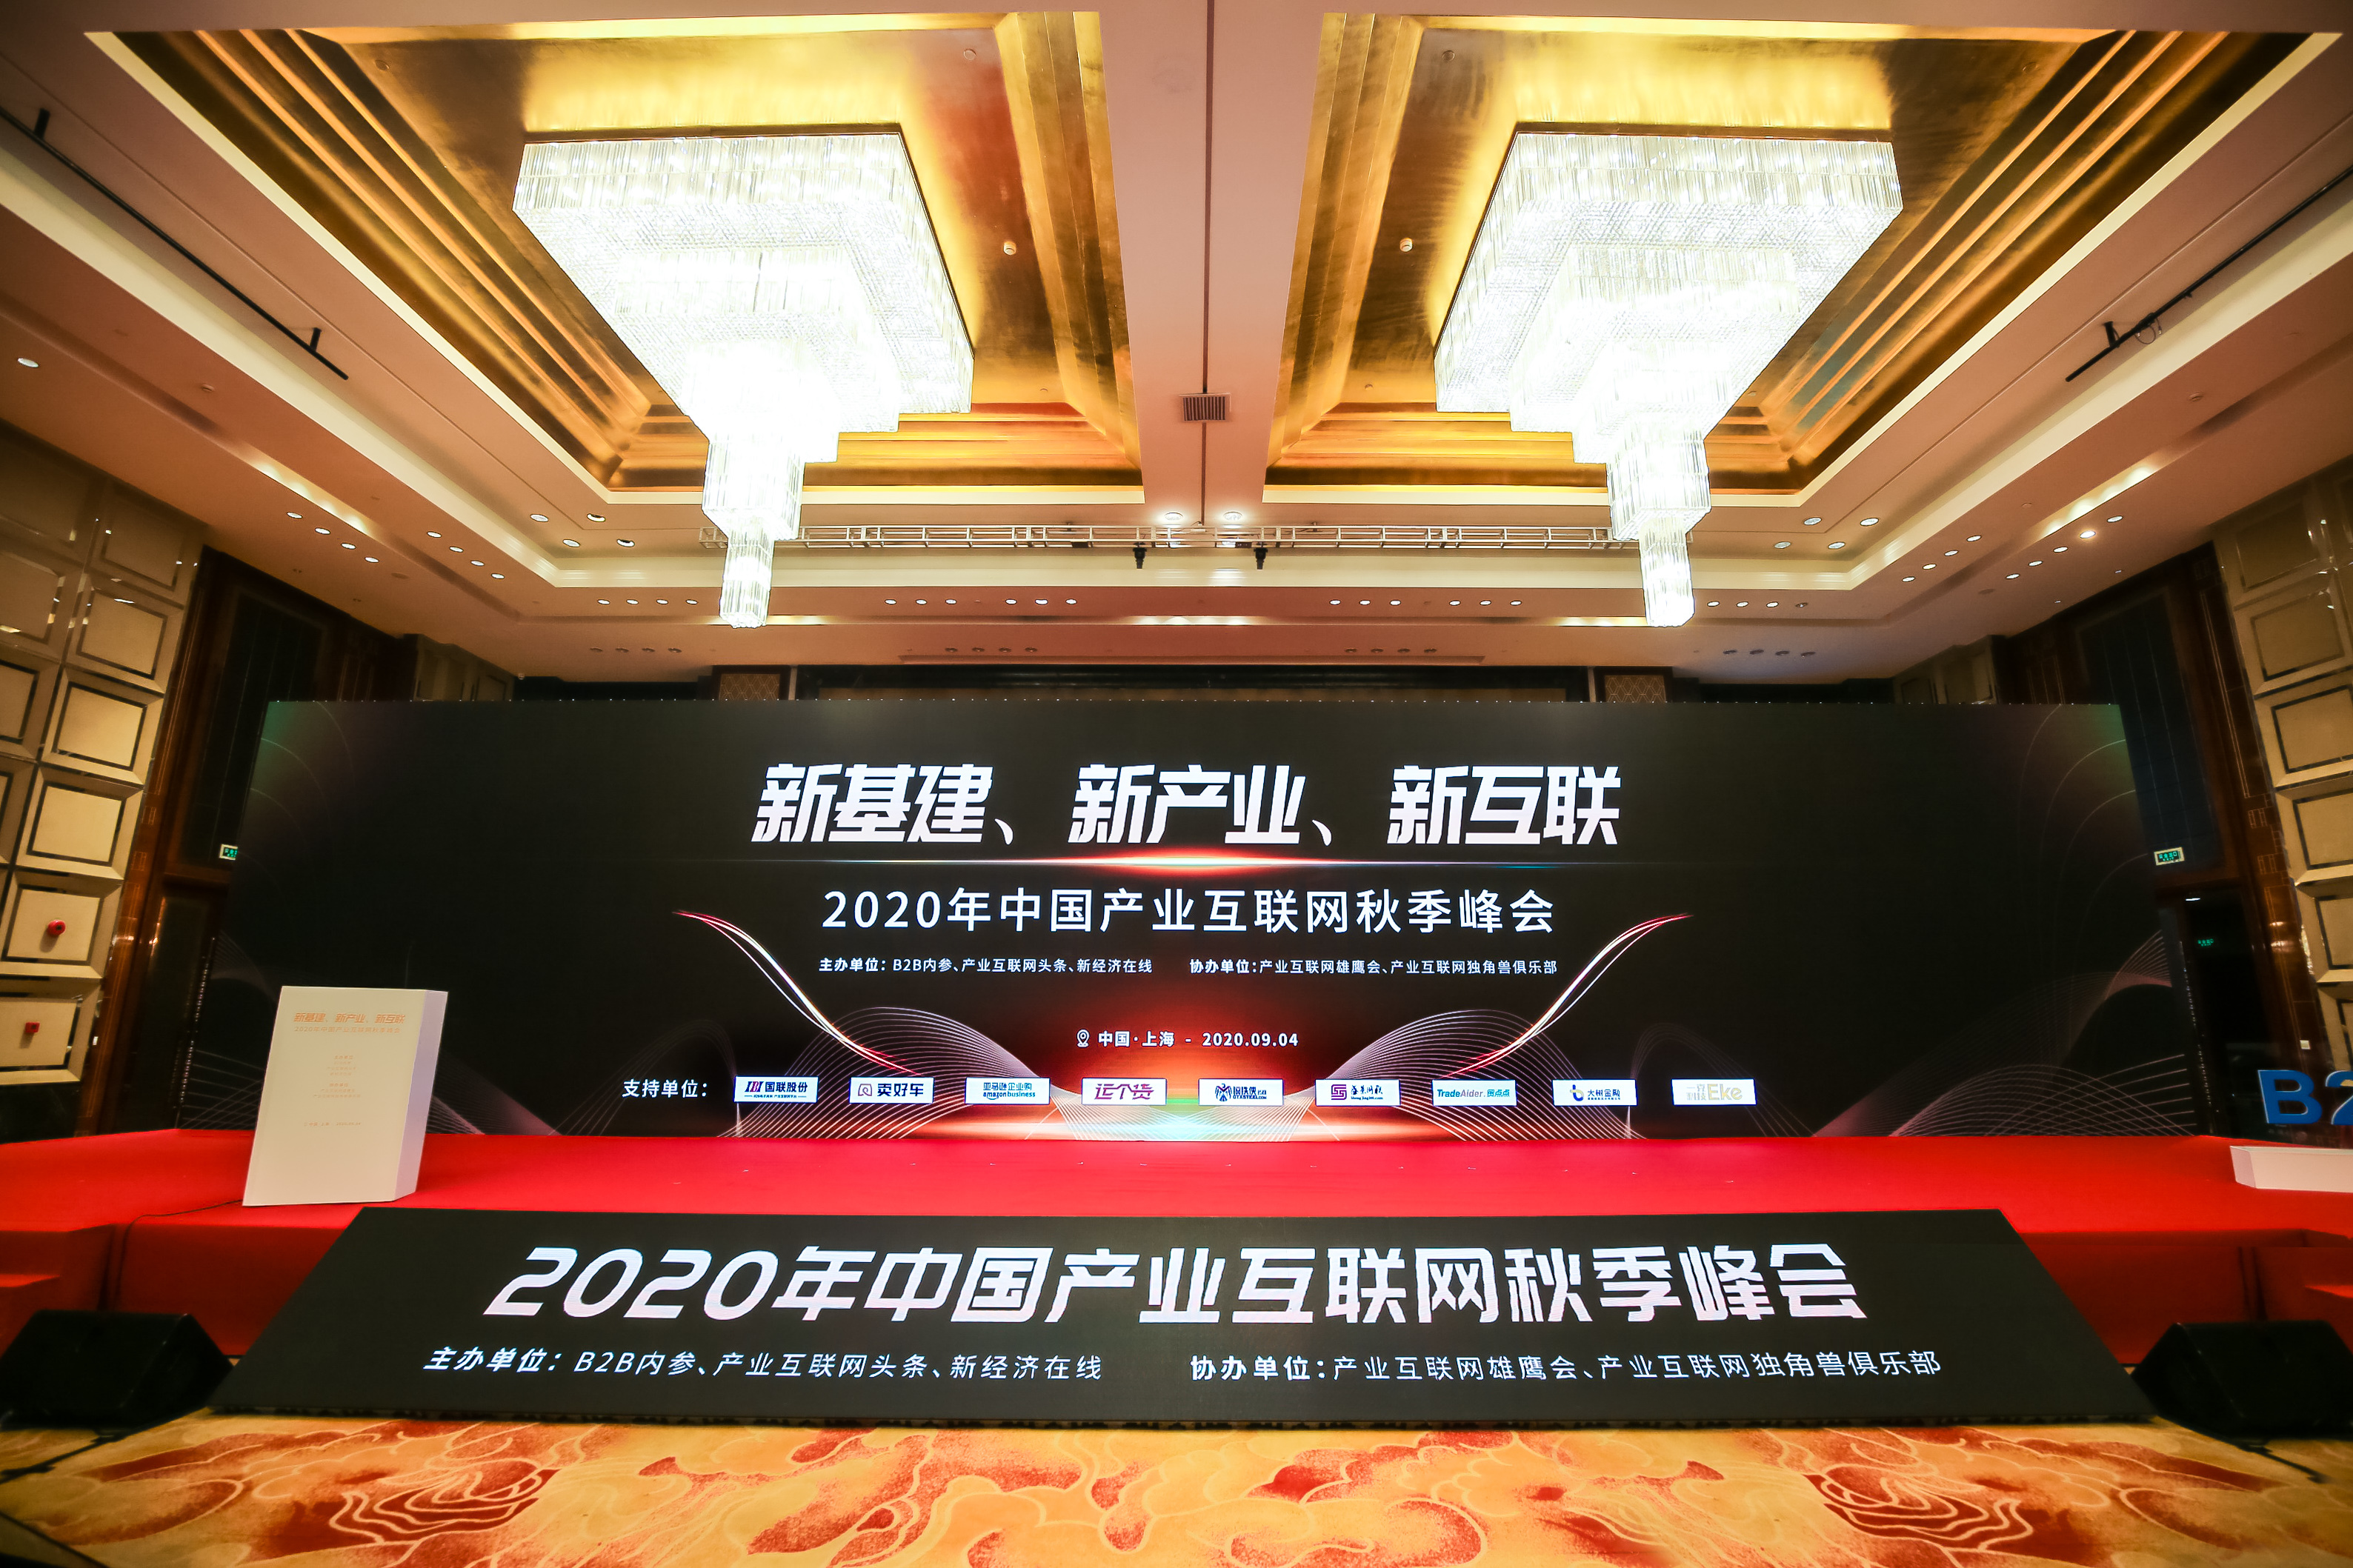 药械网荣膺 “2020年中国产业互联网百强企业”